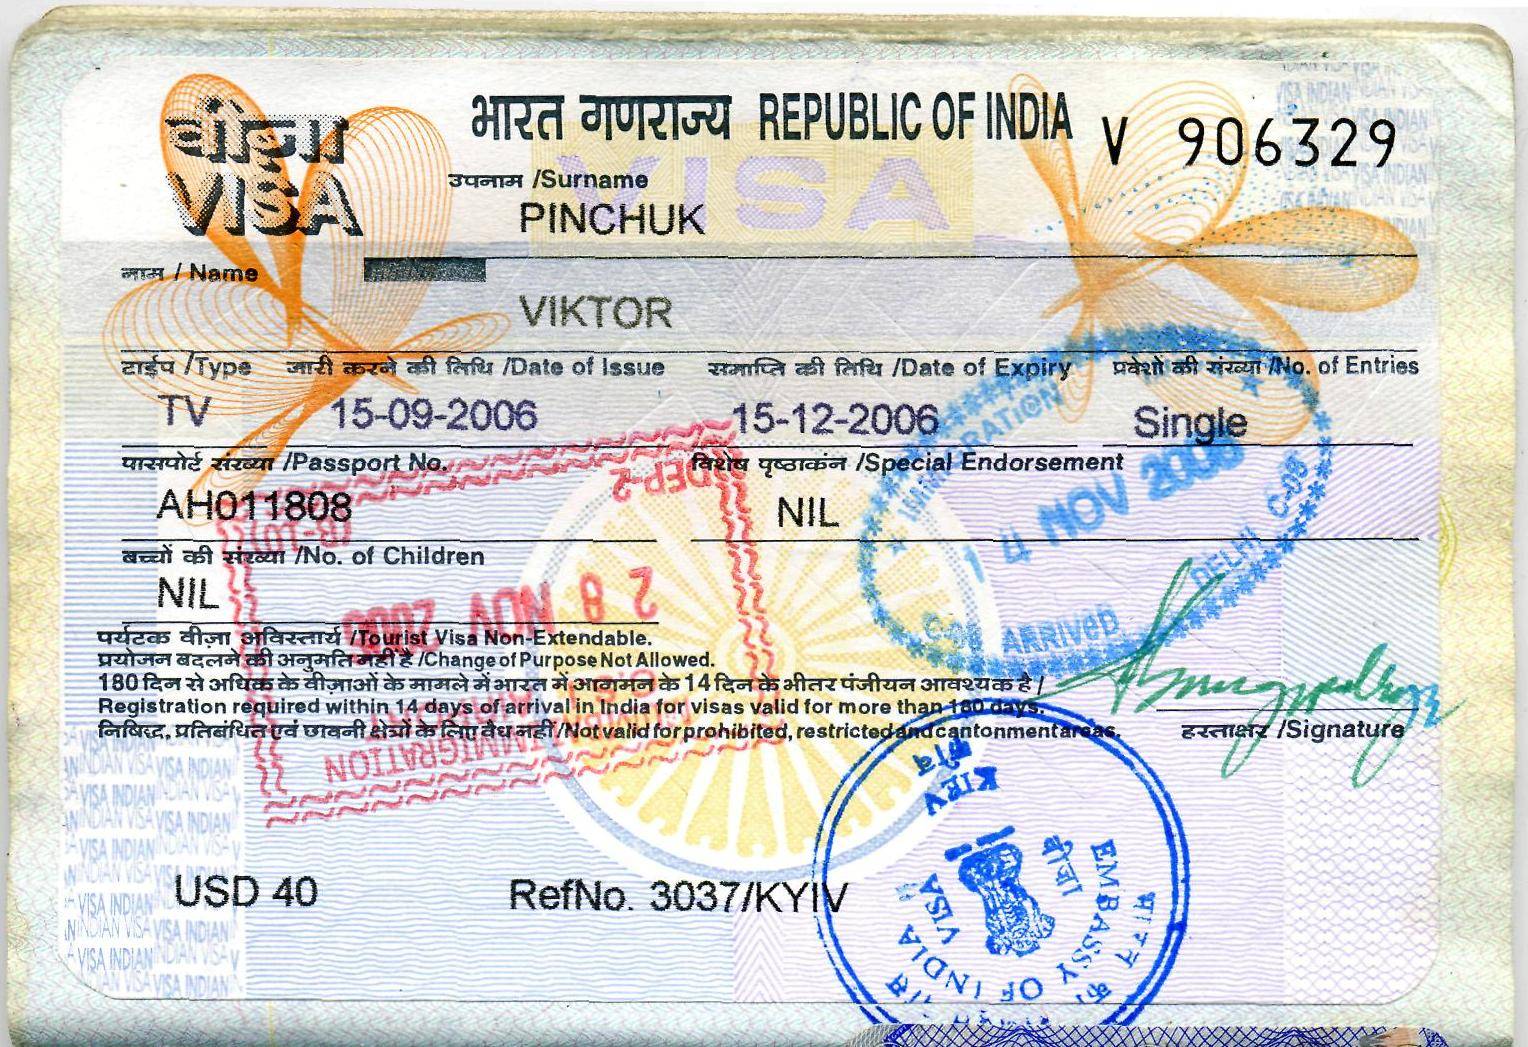 Вьетнам: для поездок до 15 дней россияне визу могут не делать